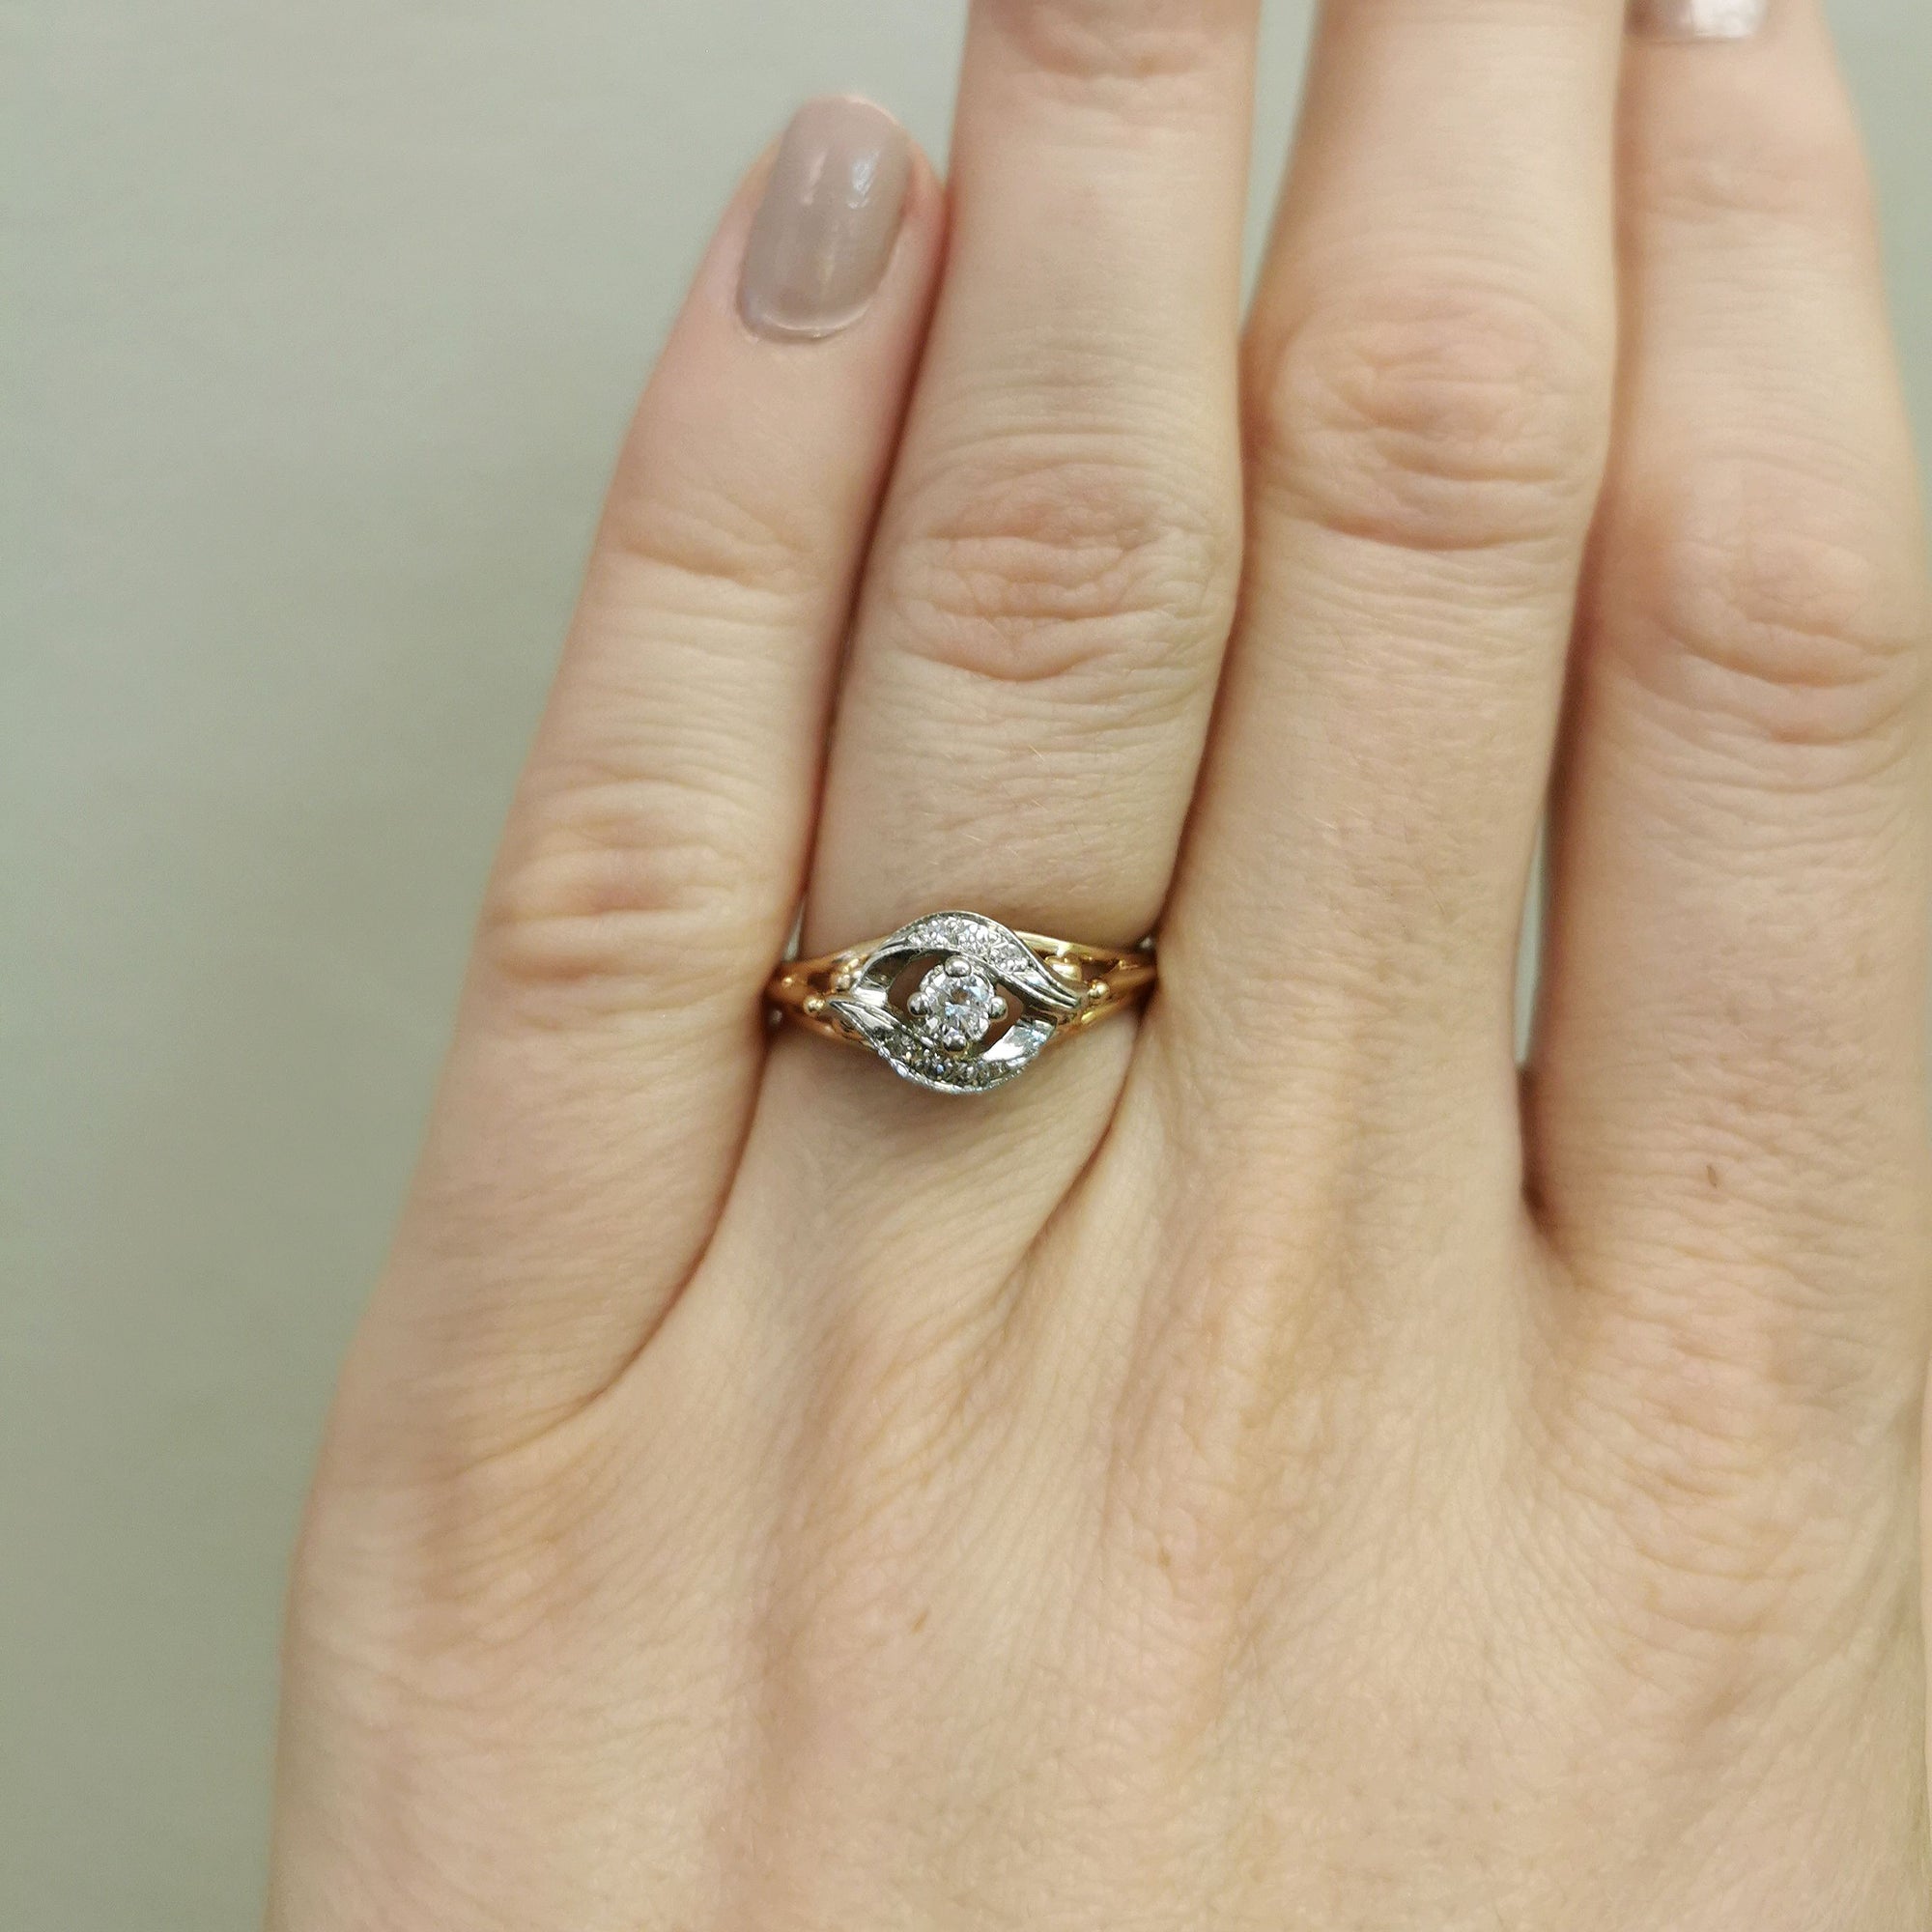 1940s Diamond Bypass Ring | 0.15 ctw | SZ 6.75 |